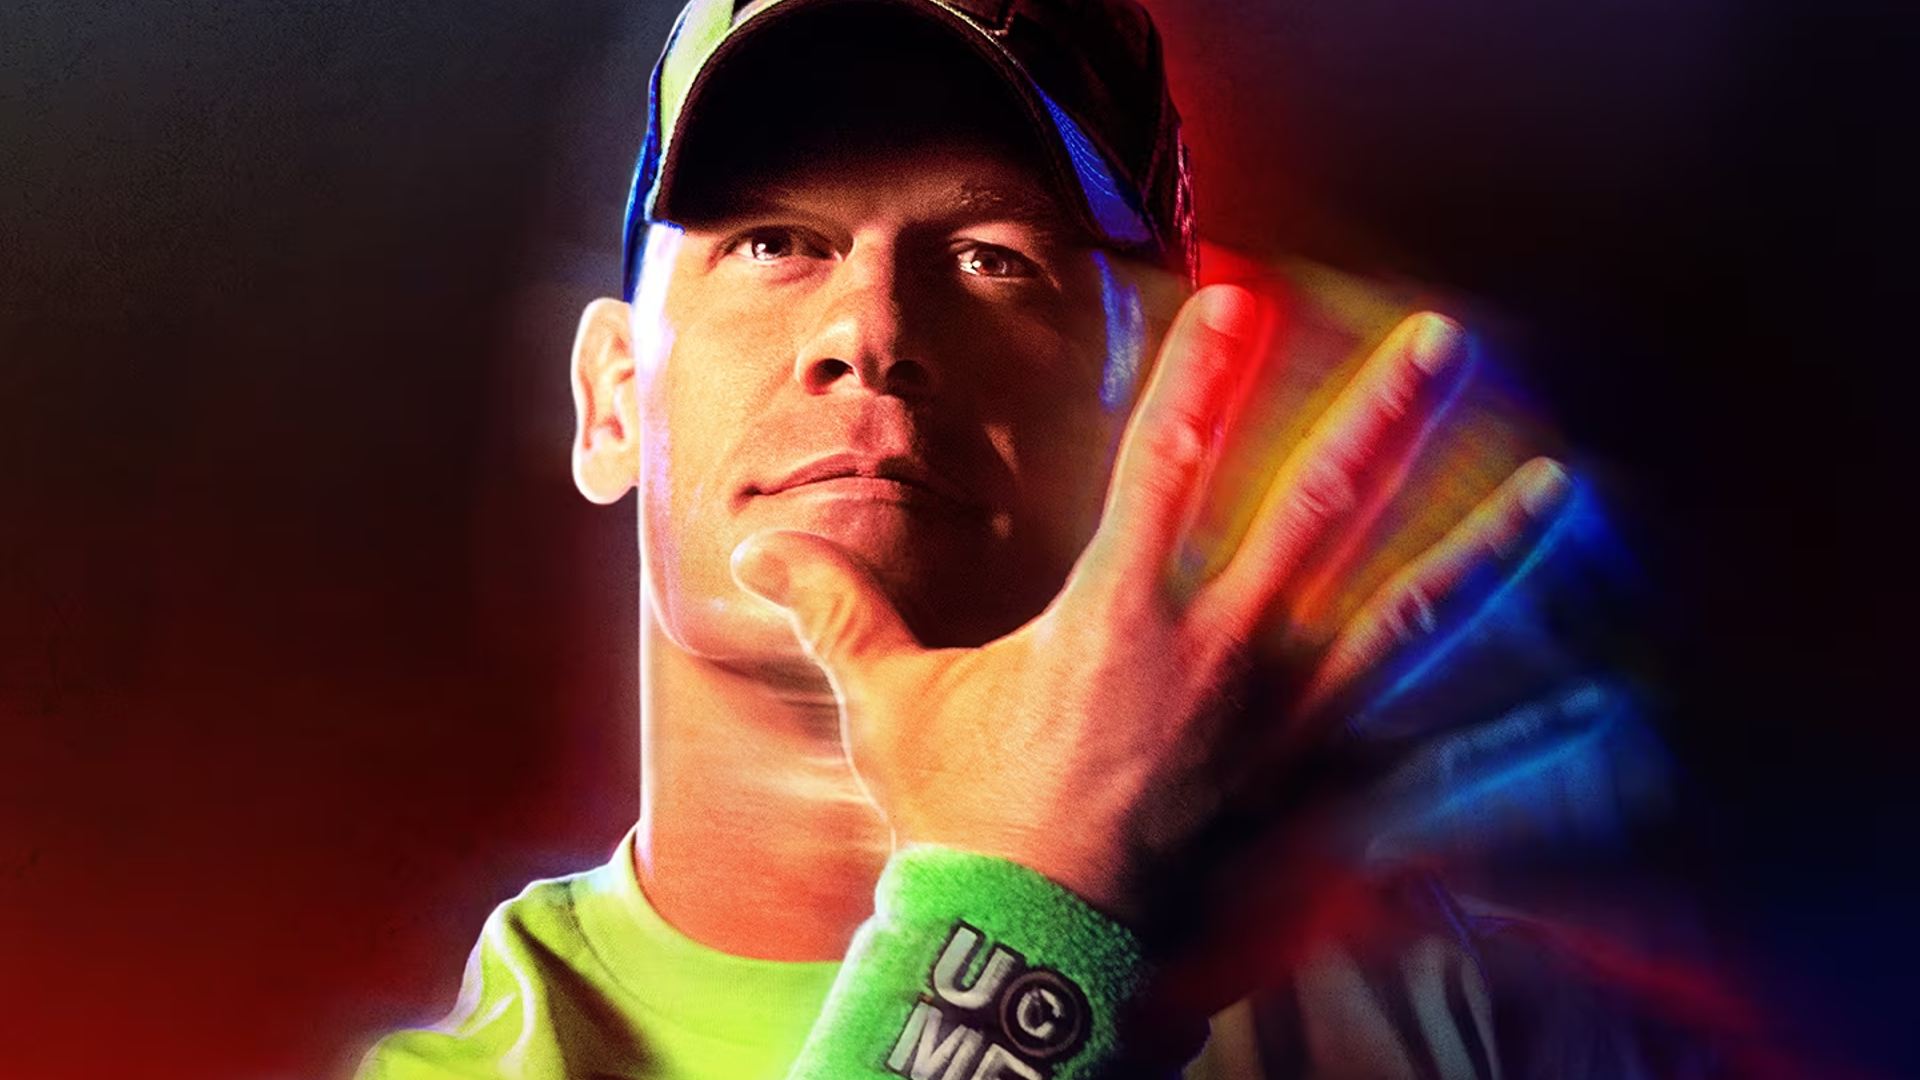 Best Sports Games: John Cena can be seen